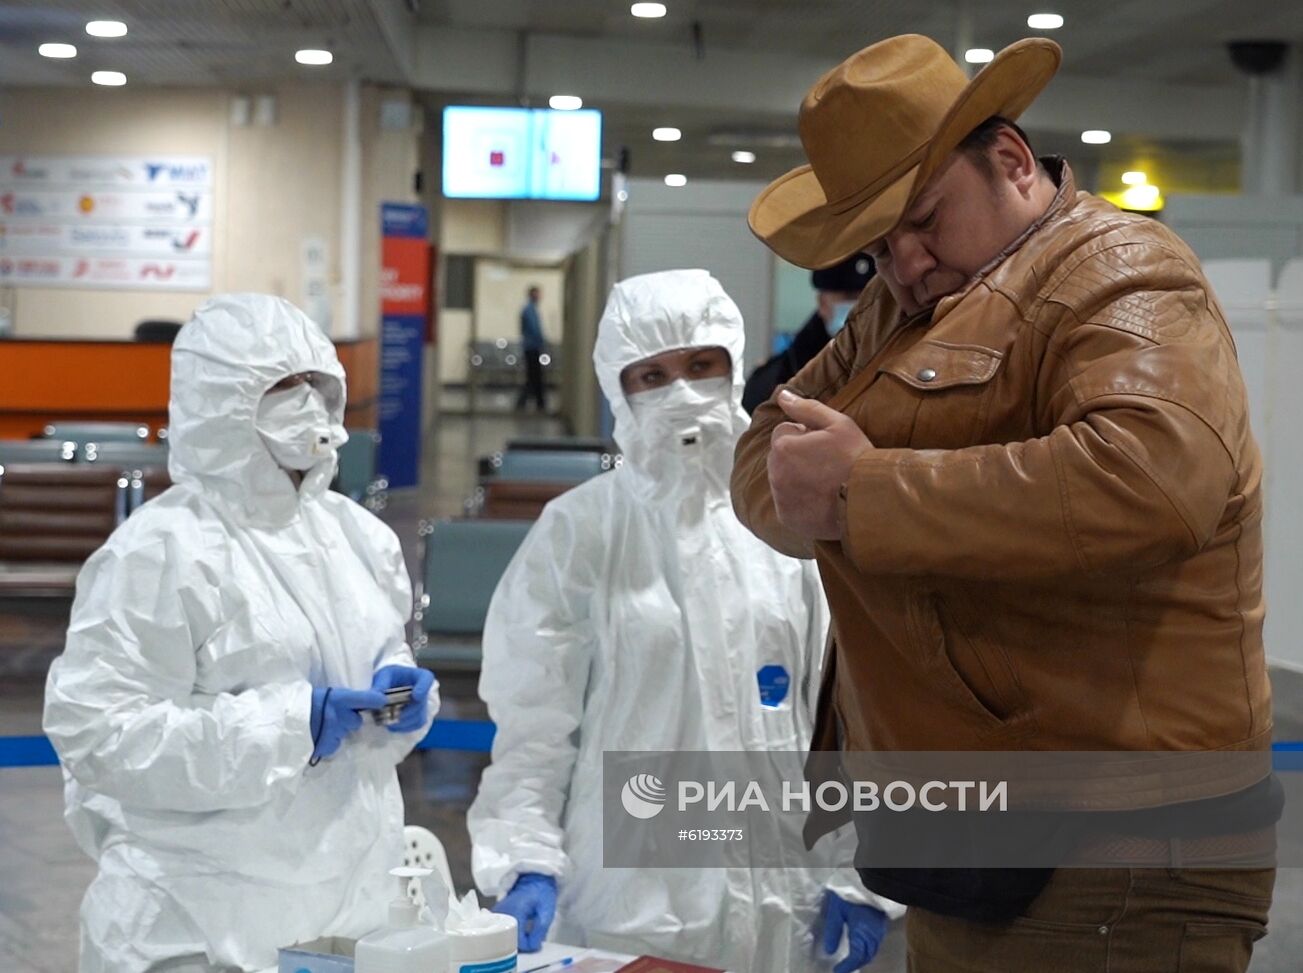 Санитарно-карантинный контроль в аэропорту Шереметьево